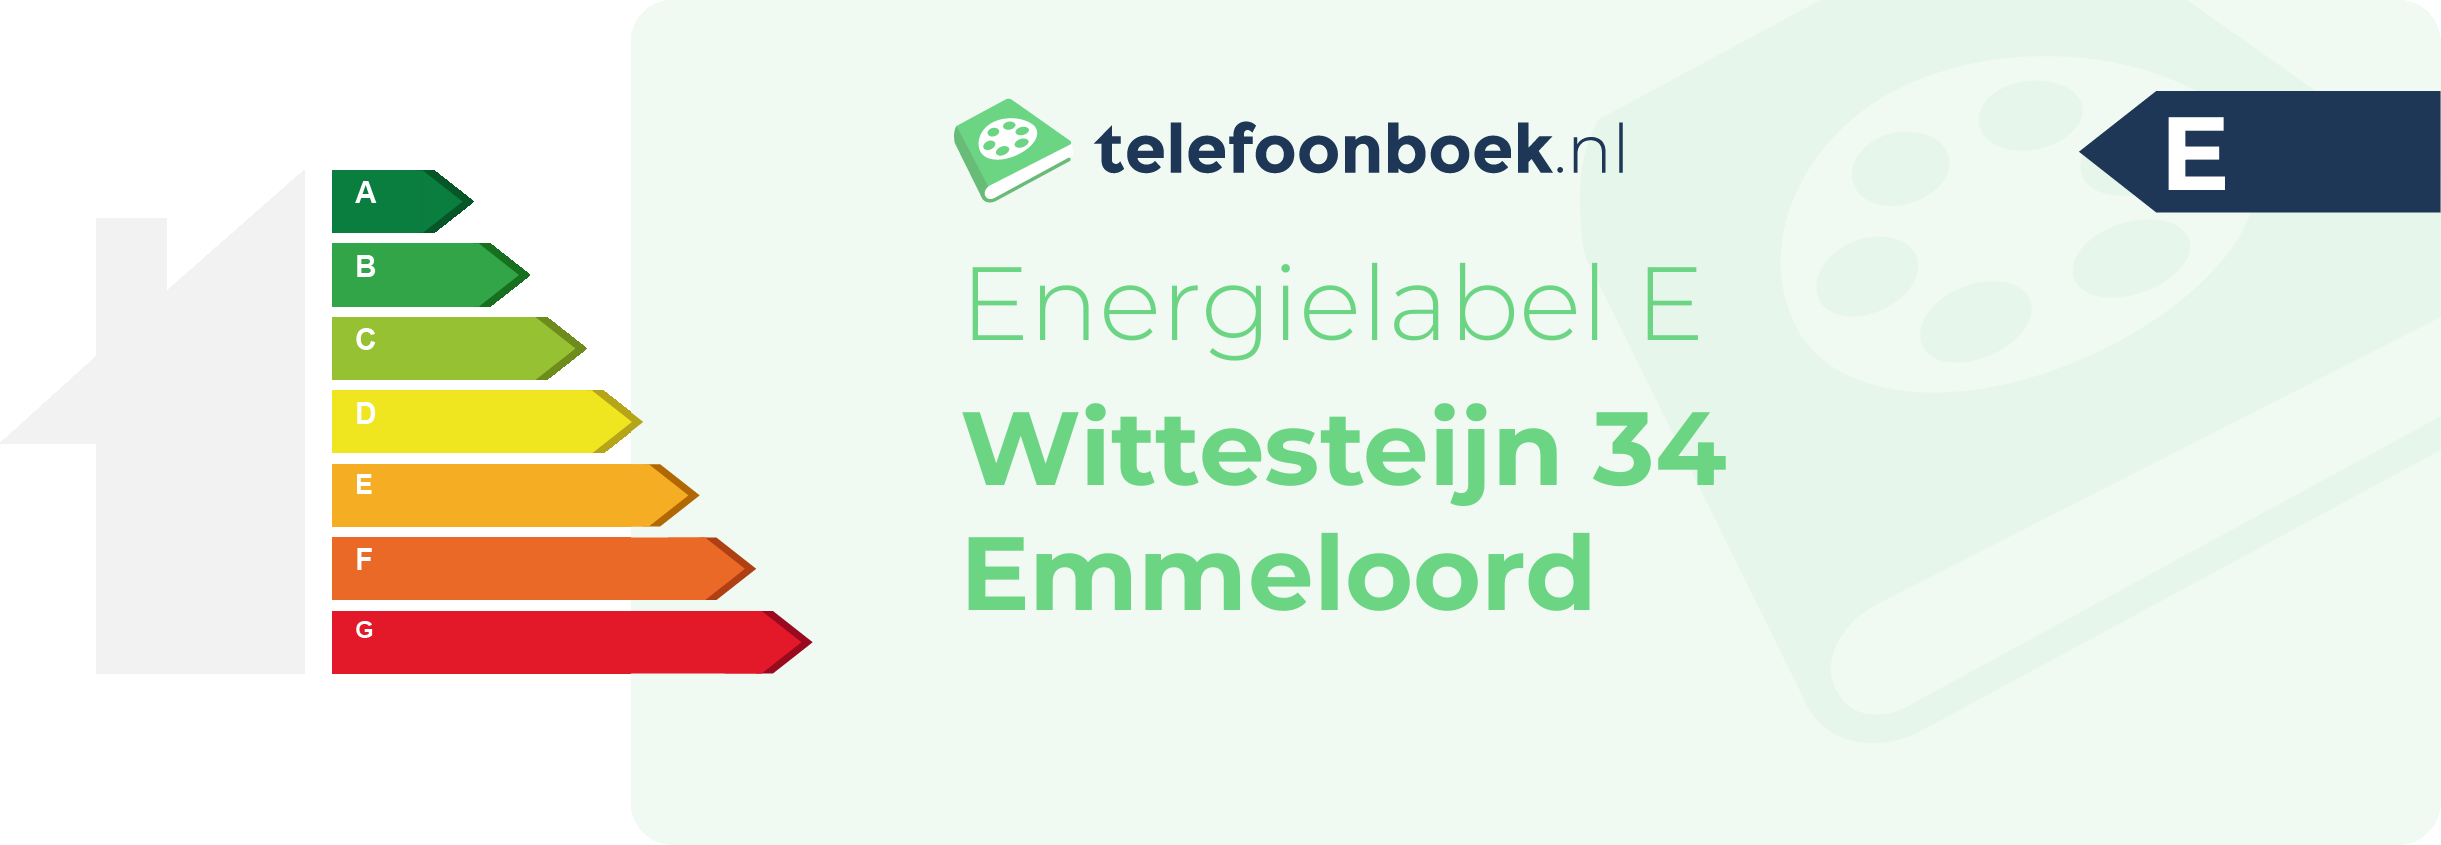 Energielabel Wittesteijn 34 Emmeloord